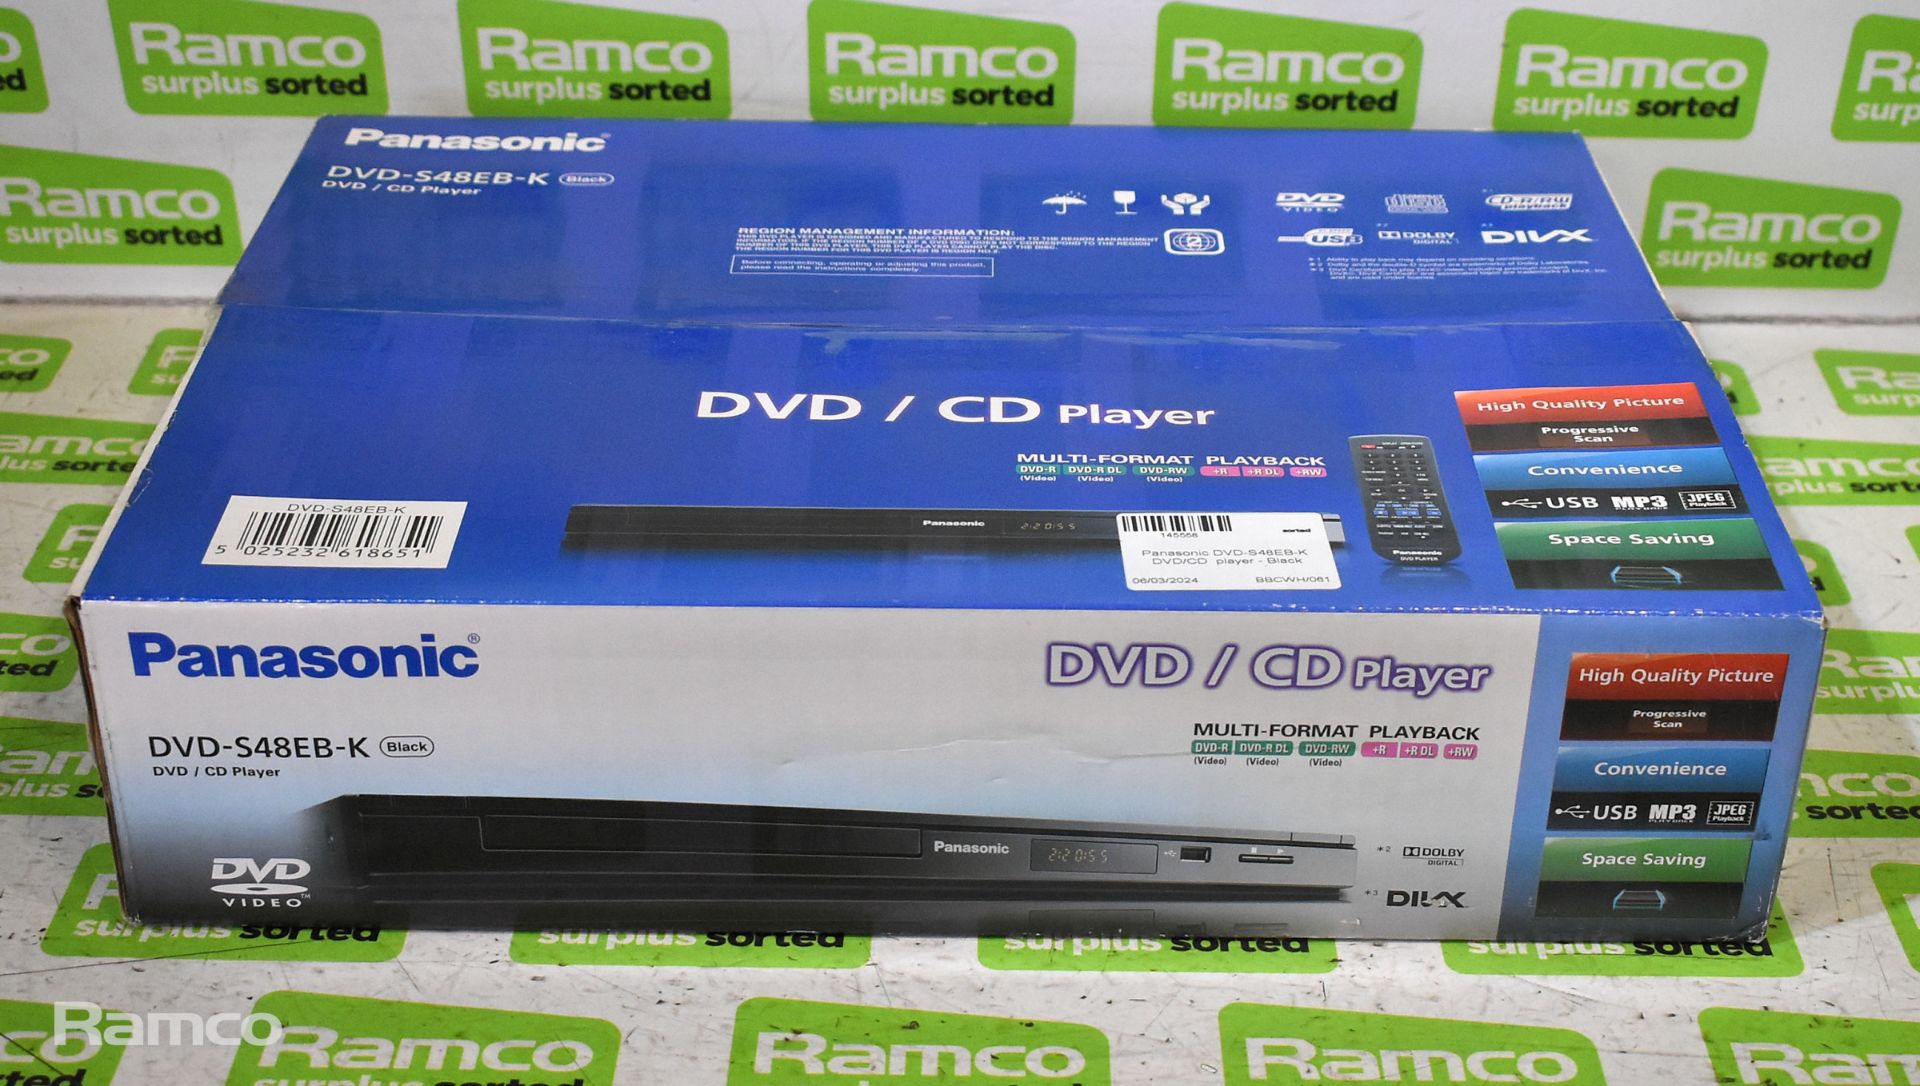 Panasonic DVD-S38EB-K DVD/CD player - Black, 3x Panasonic DVD-S48EB-K DVD/CD players - Black - Image 5 of 6